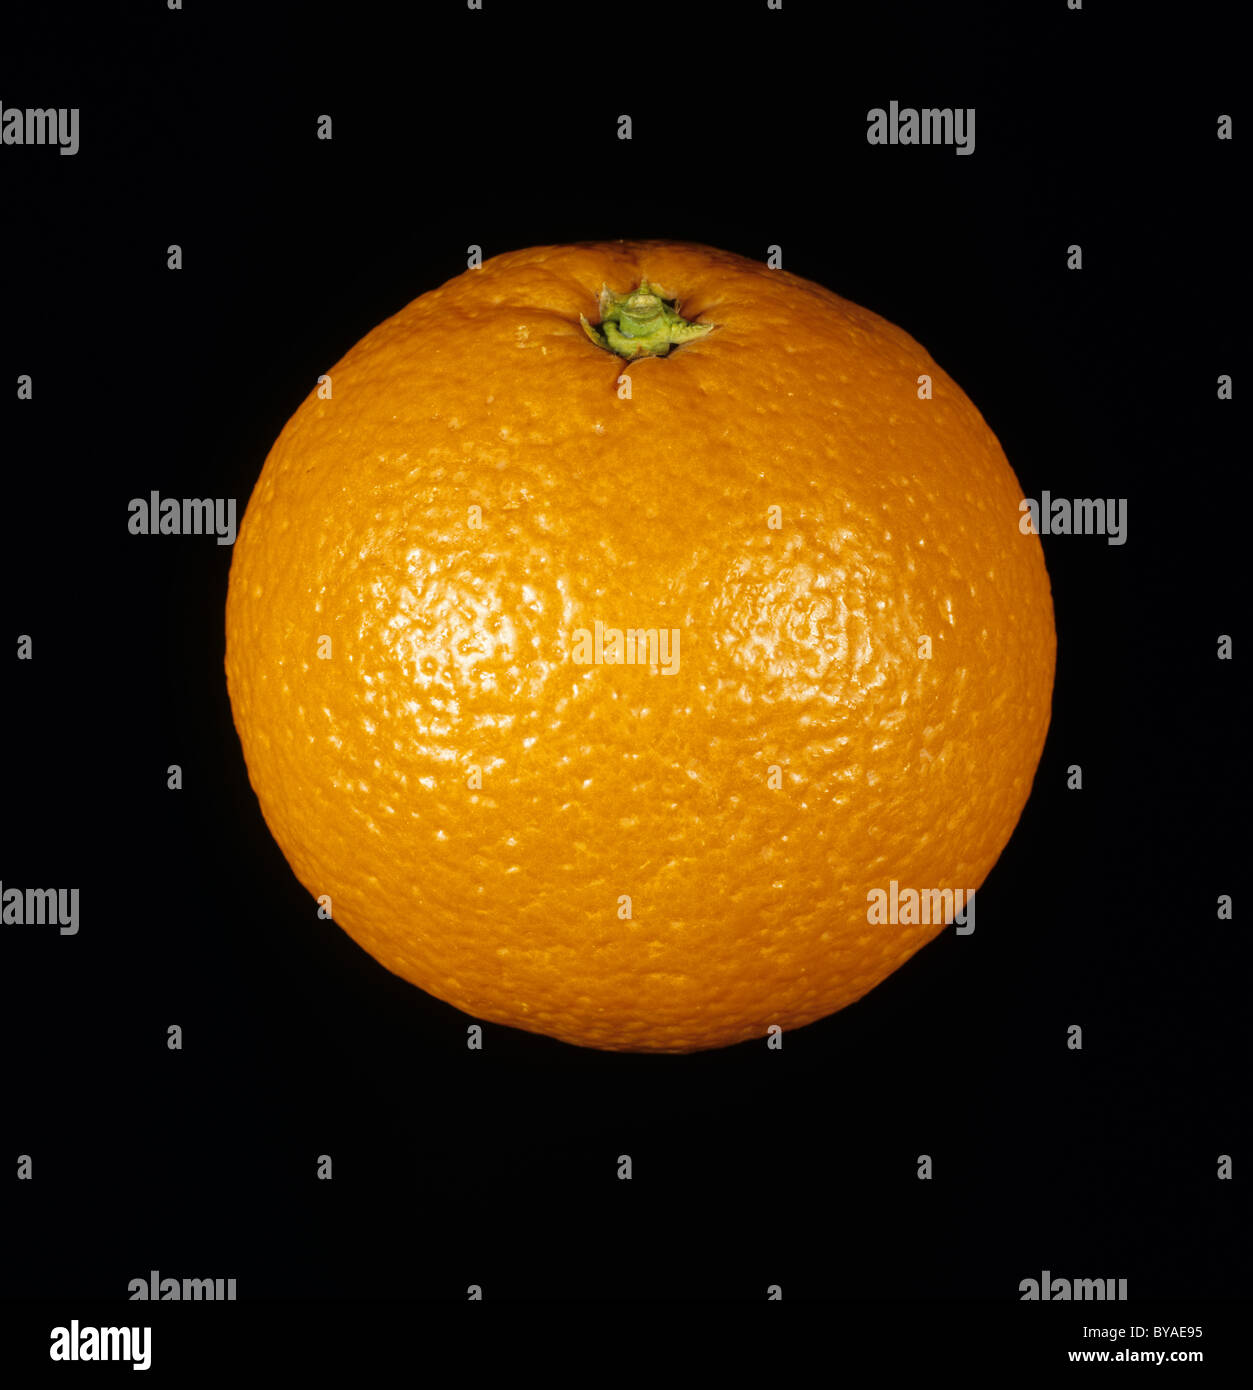 Whole citrus fruit, orange variety Salustiana Stock Photo